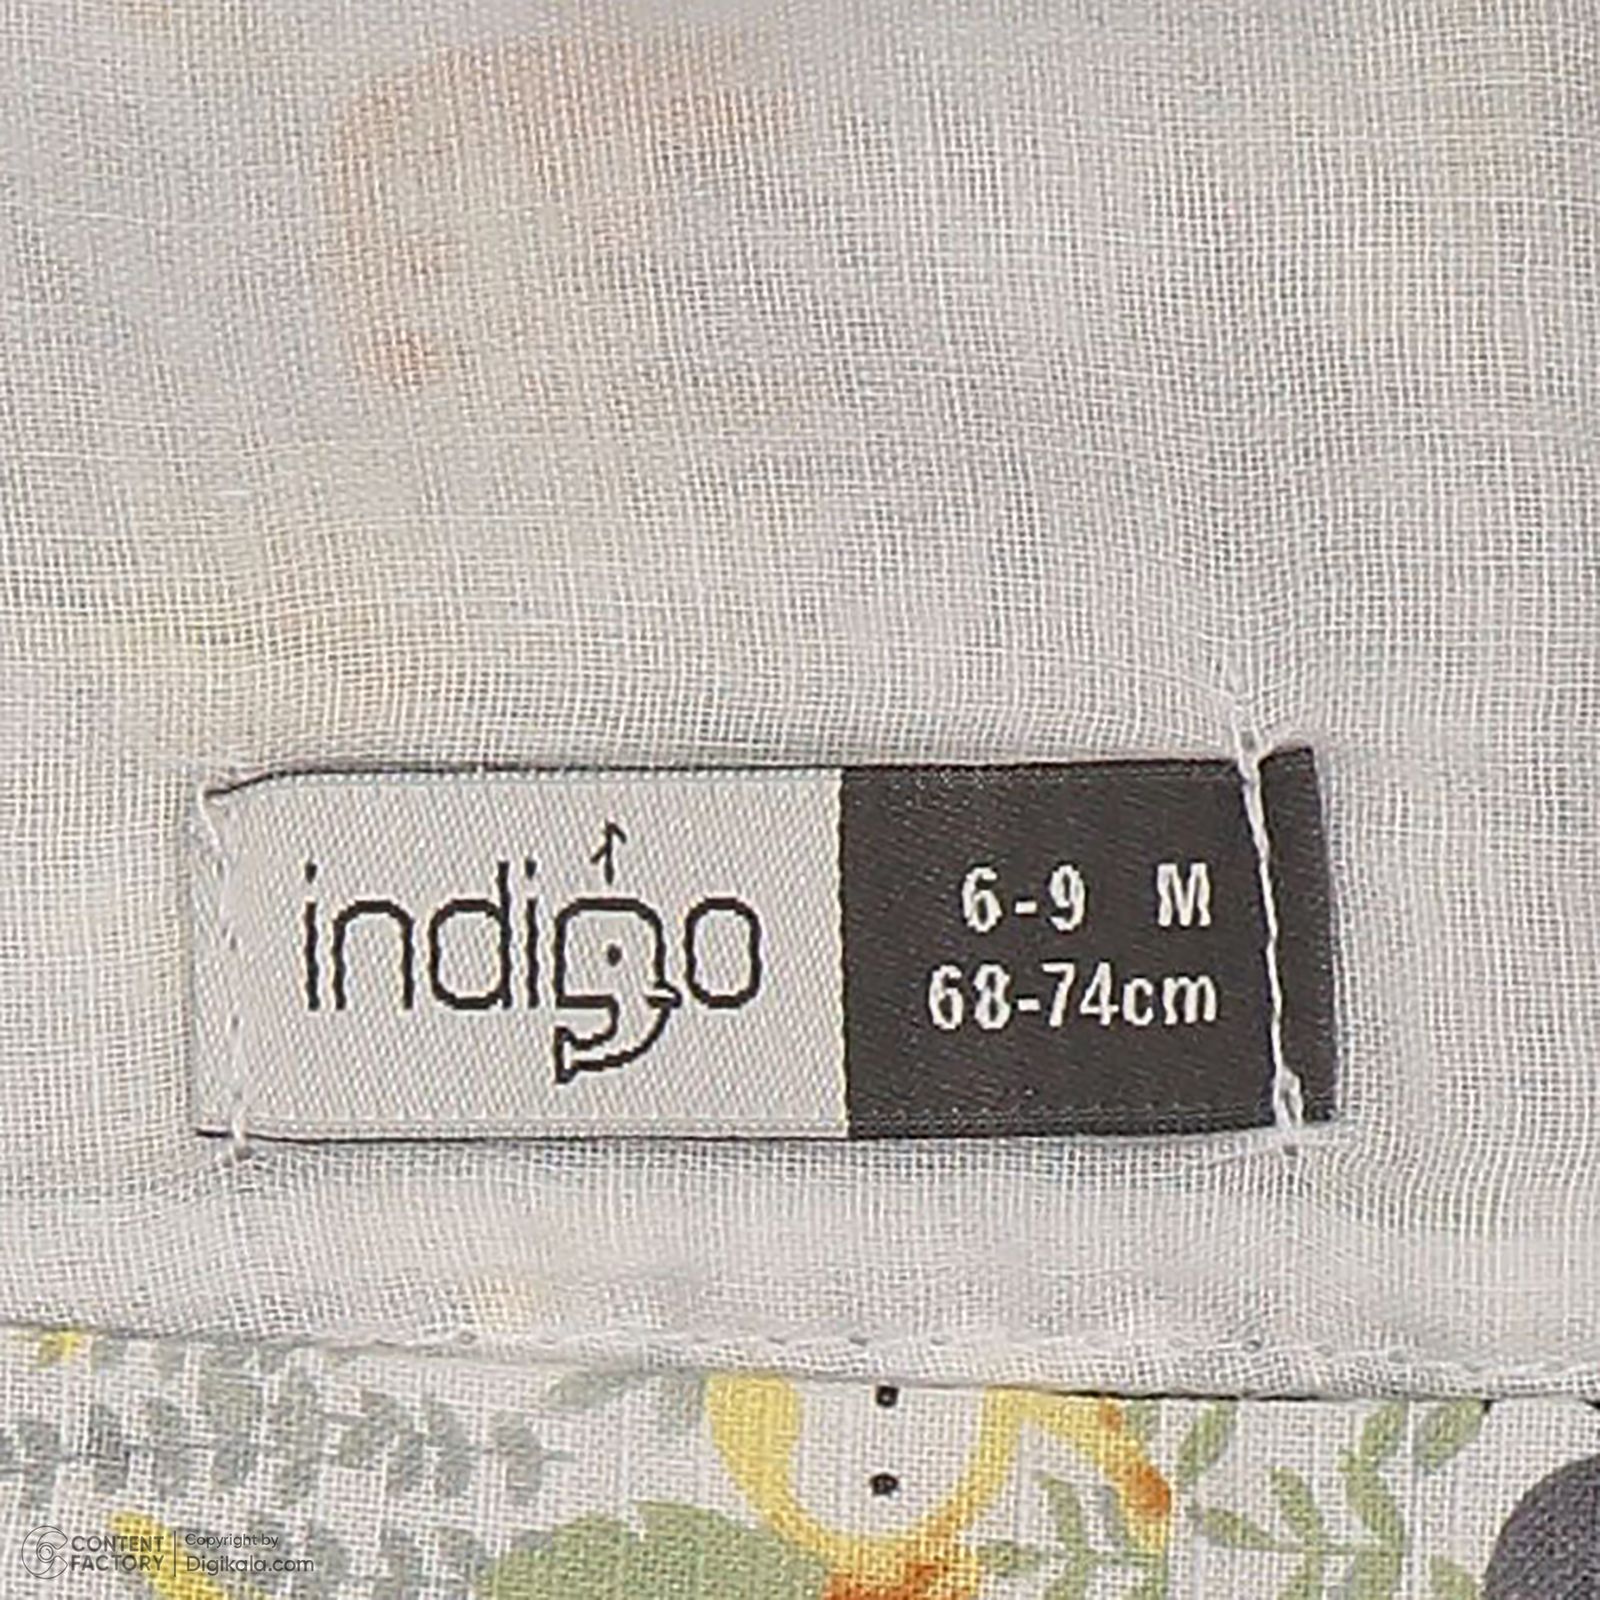 ست 3 تکه لباس نوزادی ایندیگو مدل 131661 رنگ سبز -  - 10